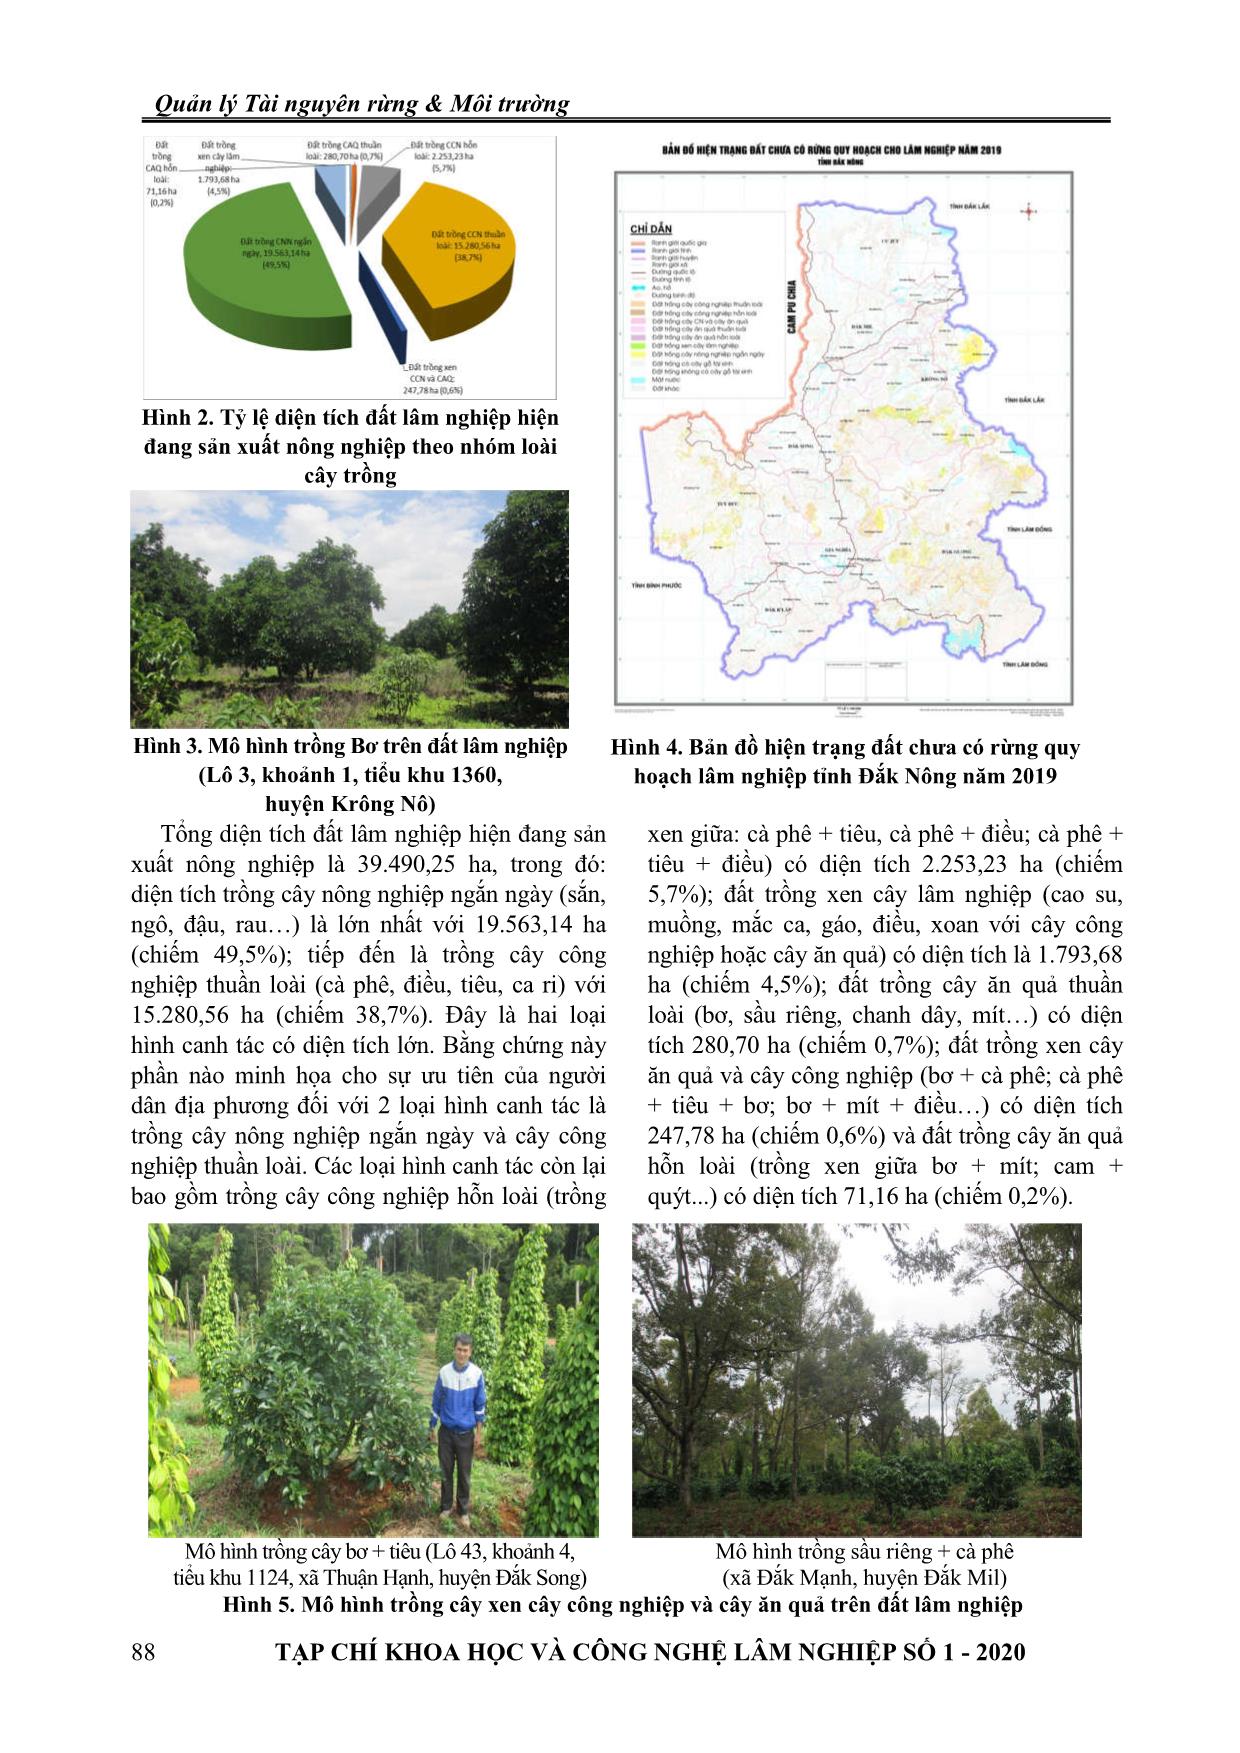 Giải pháp quản lý đất lâm nghiệp hiện đang sản xuất nông nghiệp tại tỉnh Đắk Nông trang 5